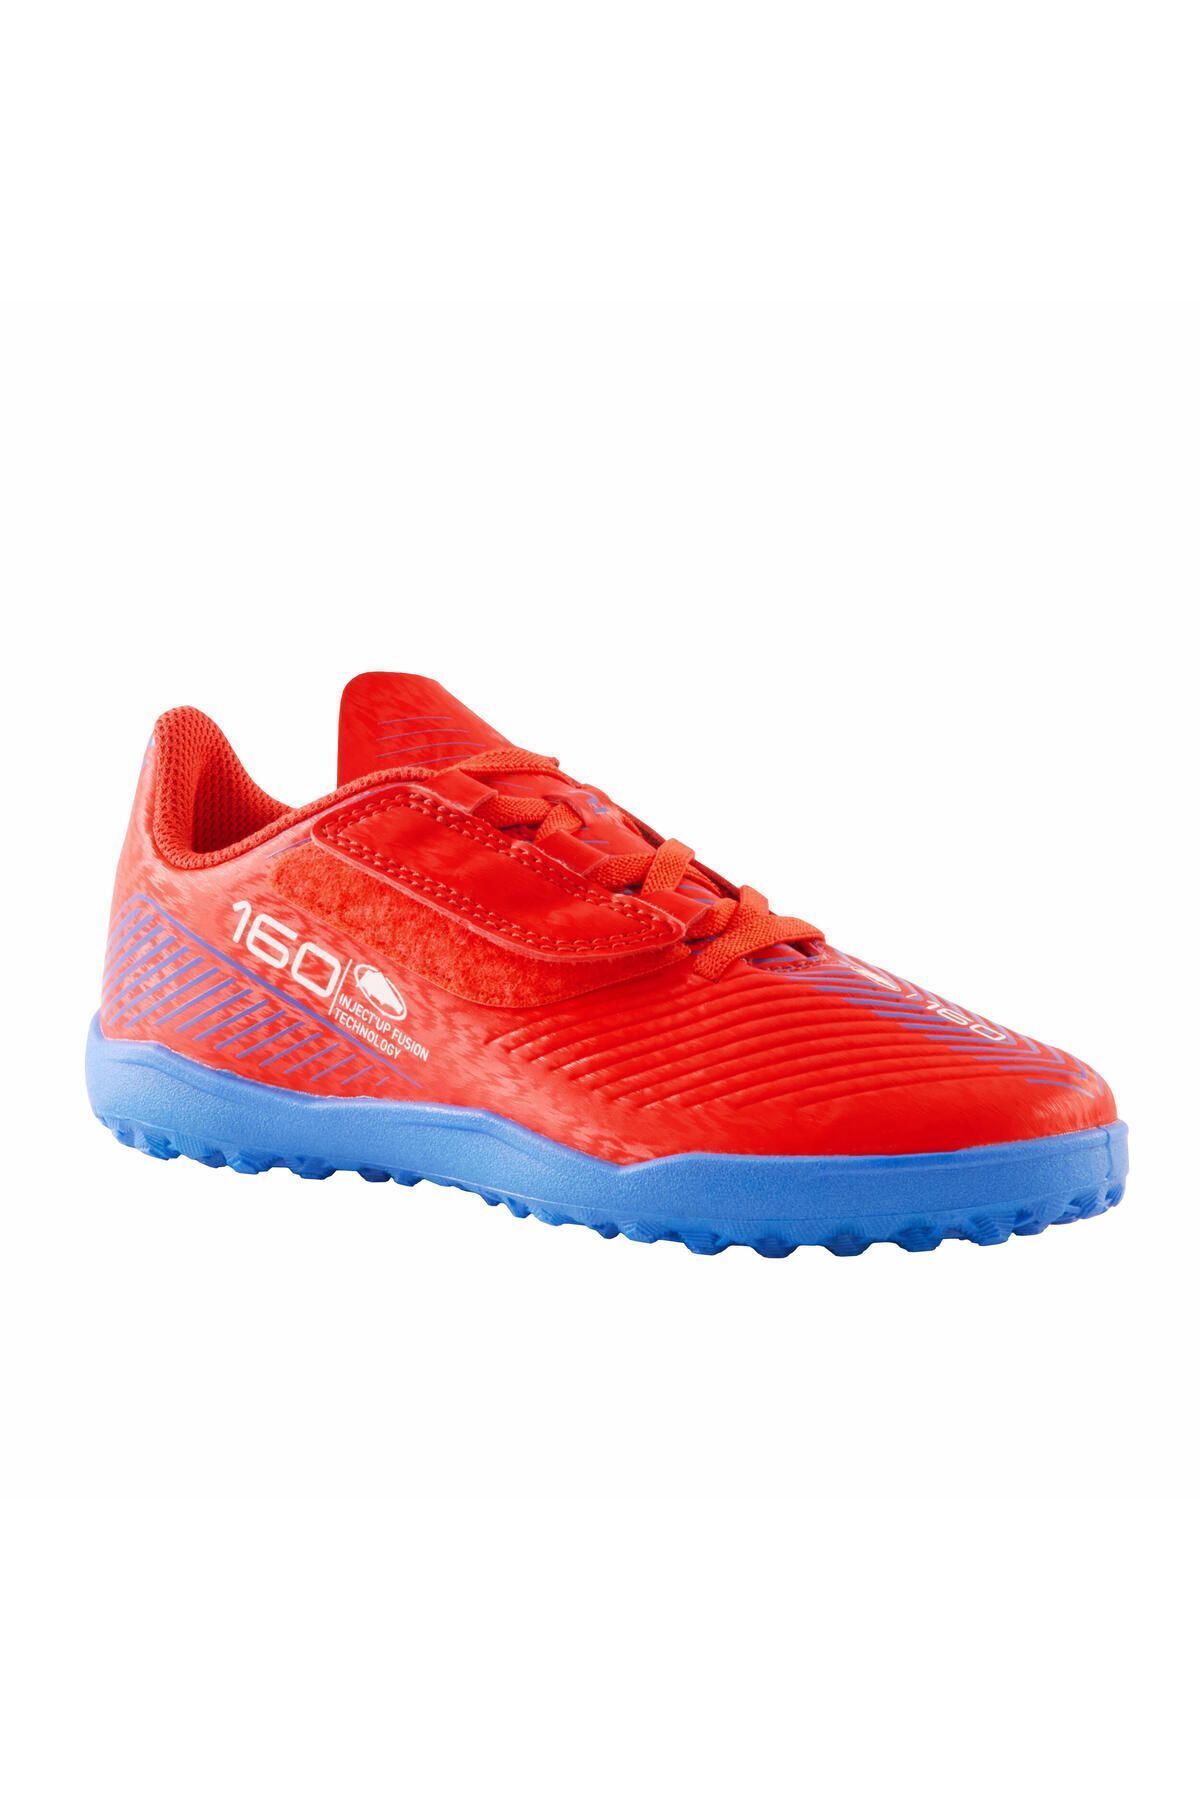 Decathlon Çocuk Krampon / Futbol Ayakkabısı - Kırmızı - 160 Easy Turf